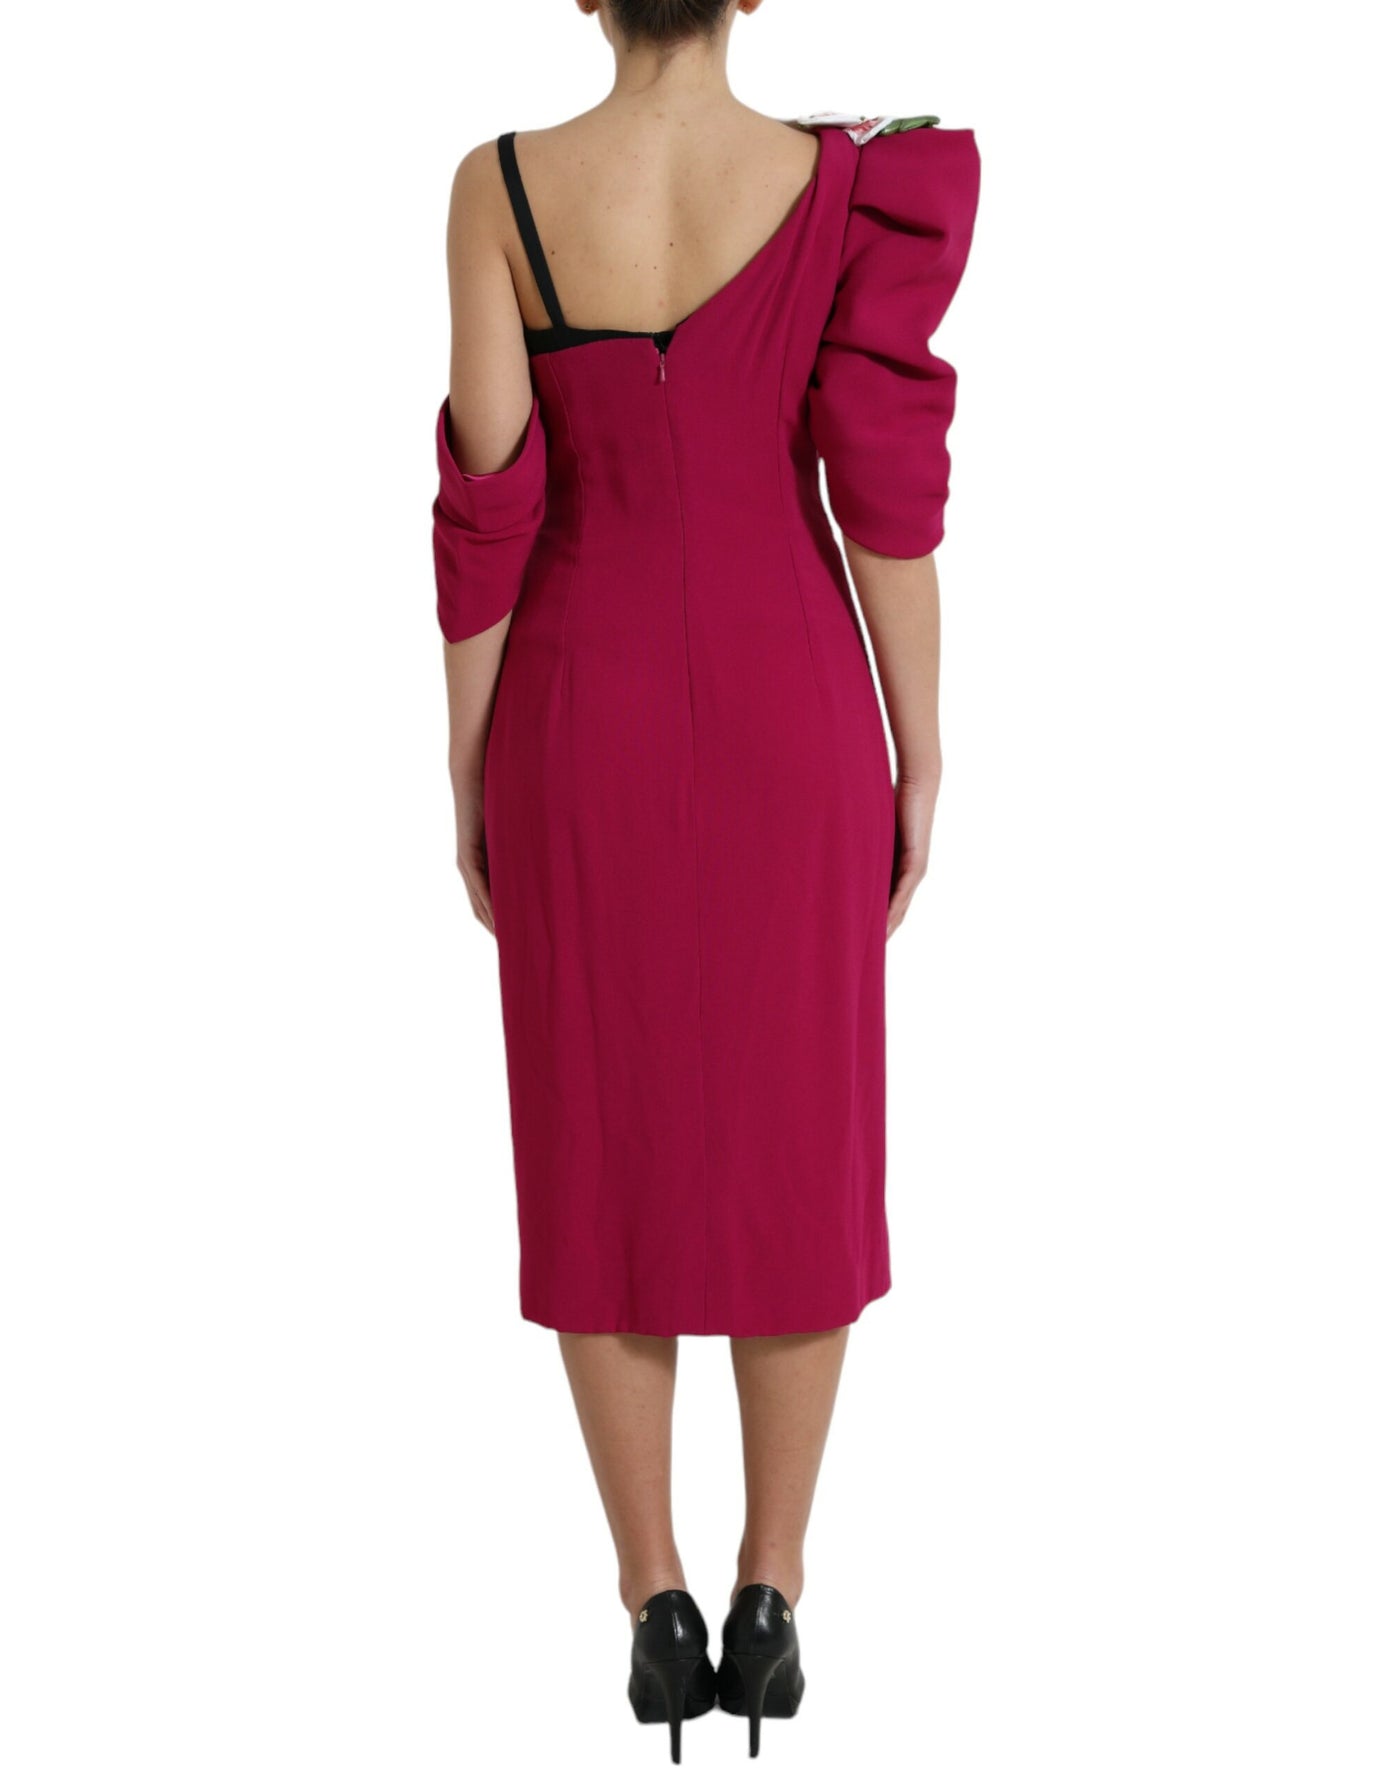 Dolce & Gabbana Purple Flower Embellished One Shoulder Dress